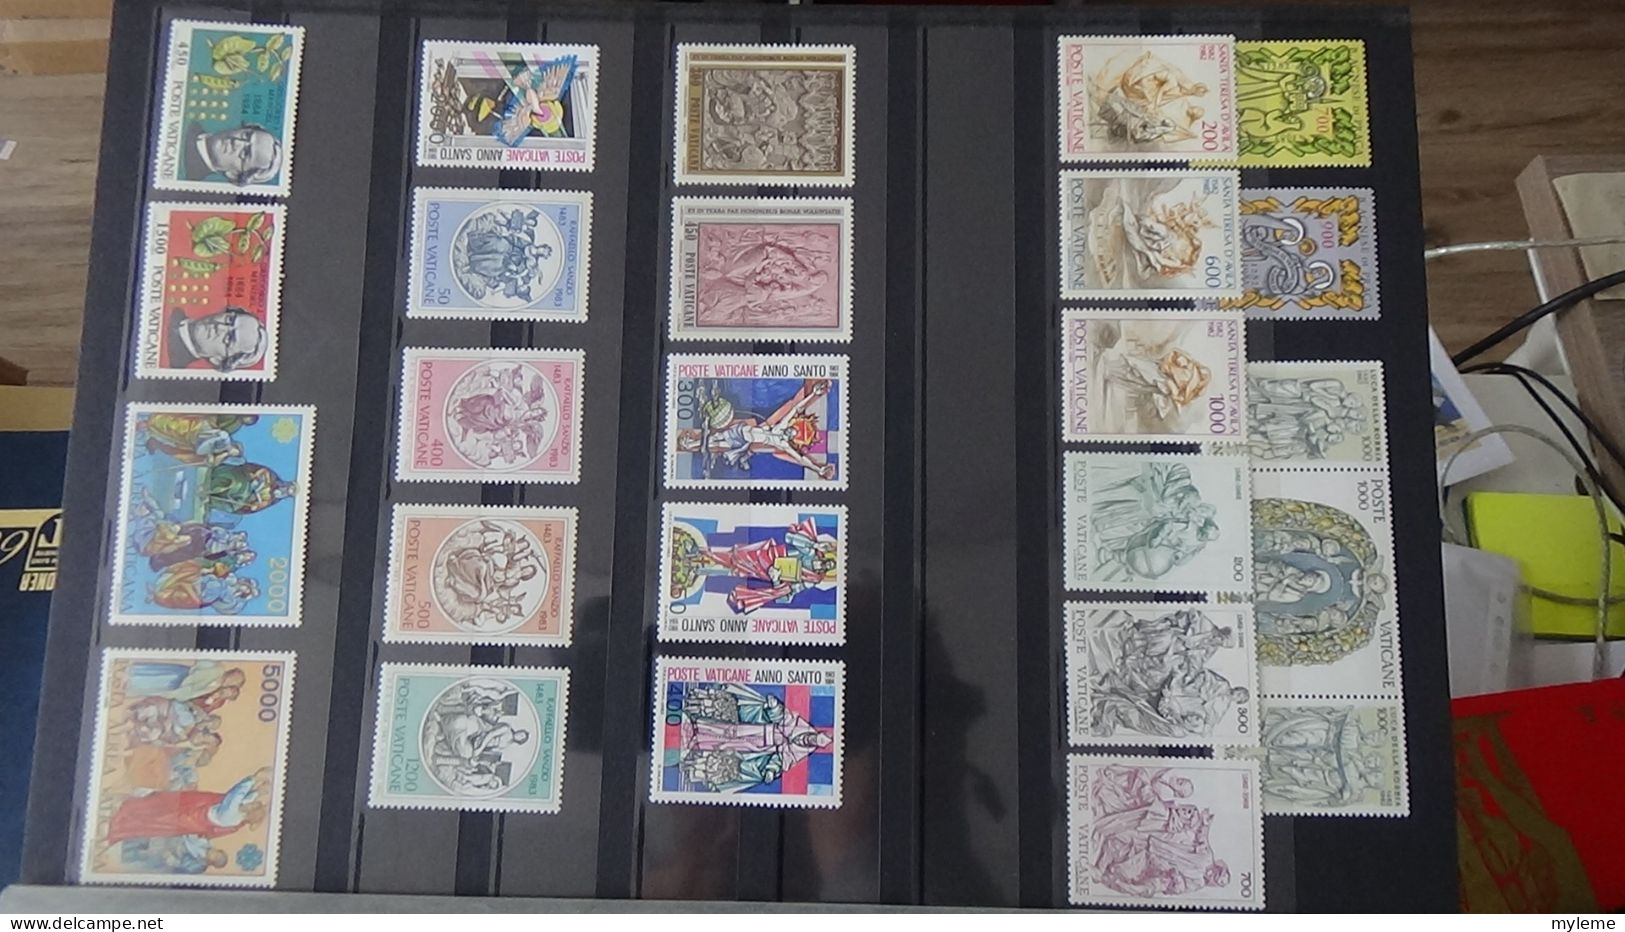 AZ140 Bel ensemble de timbres et blocs ** du Vatican.  A saisir !!!